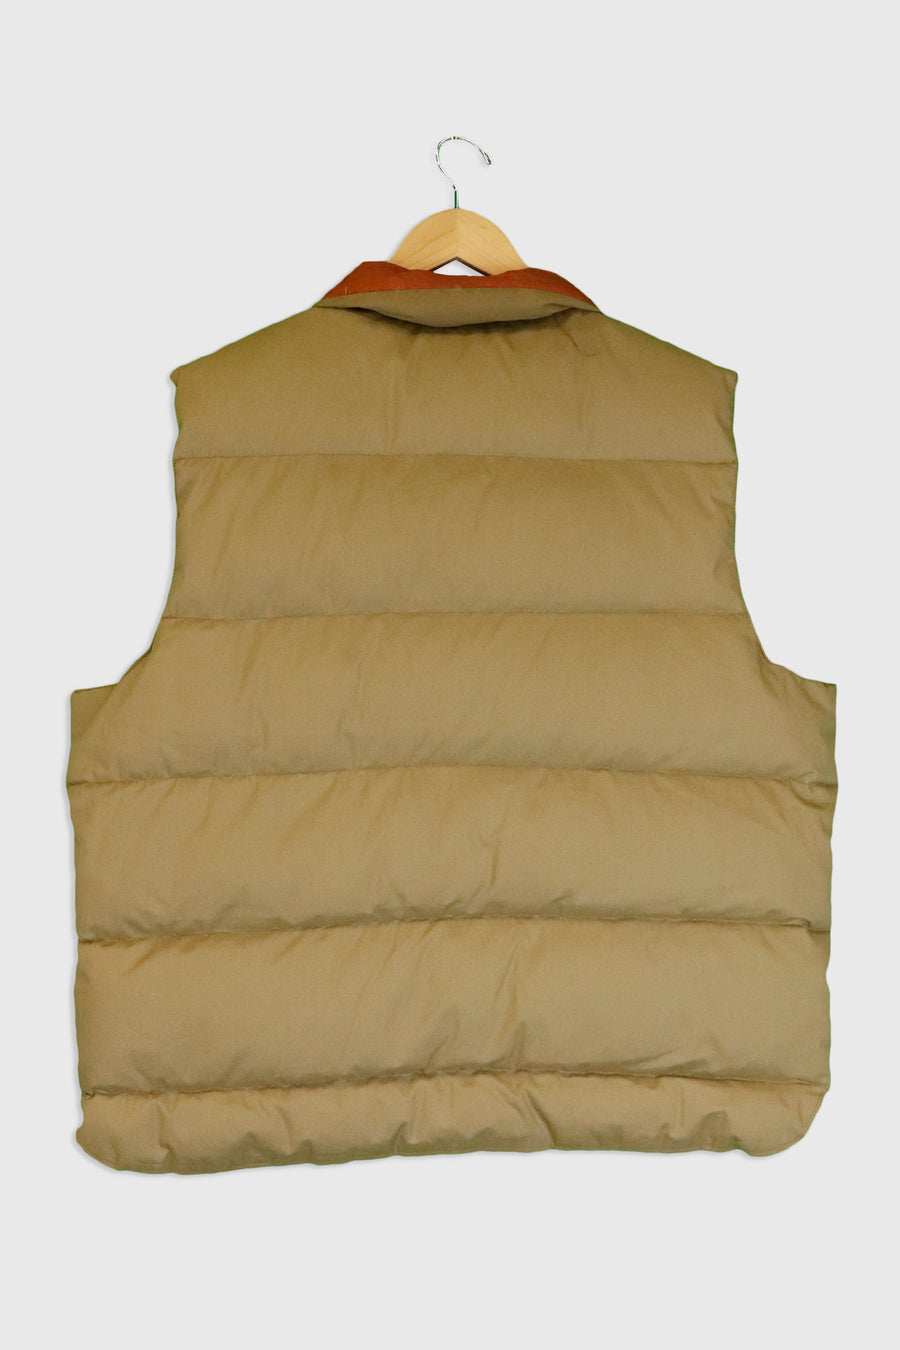 Vintage Reversable Vest With Pockets Sz 2XL